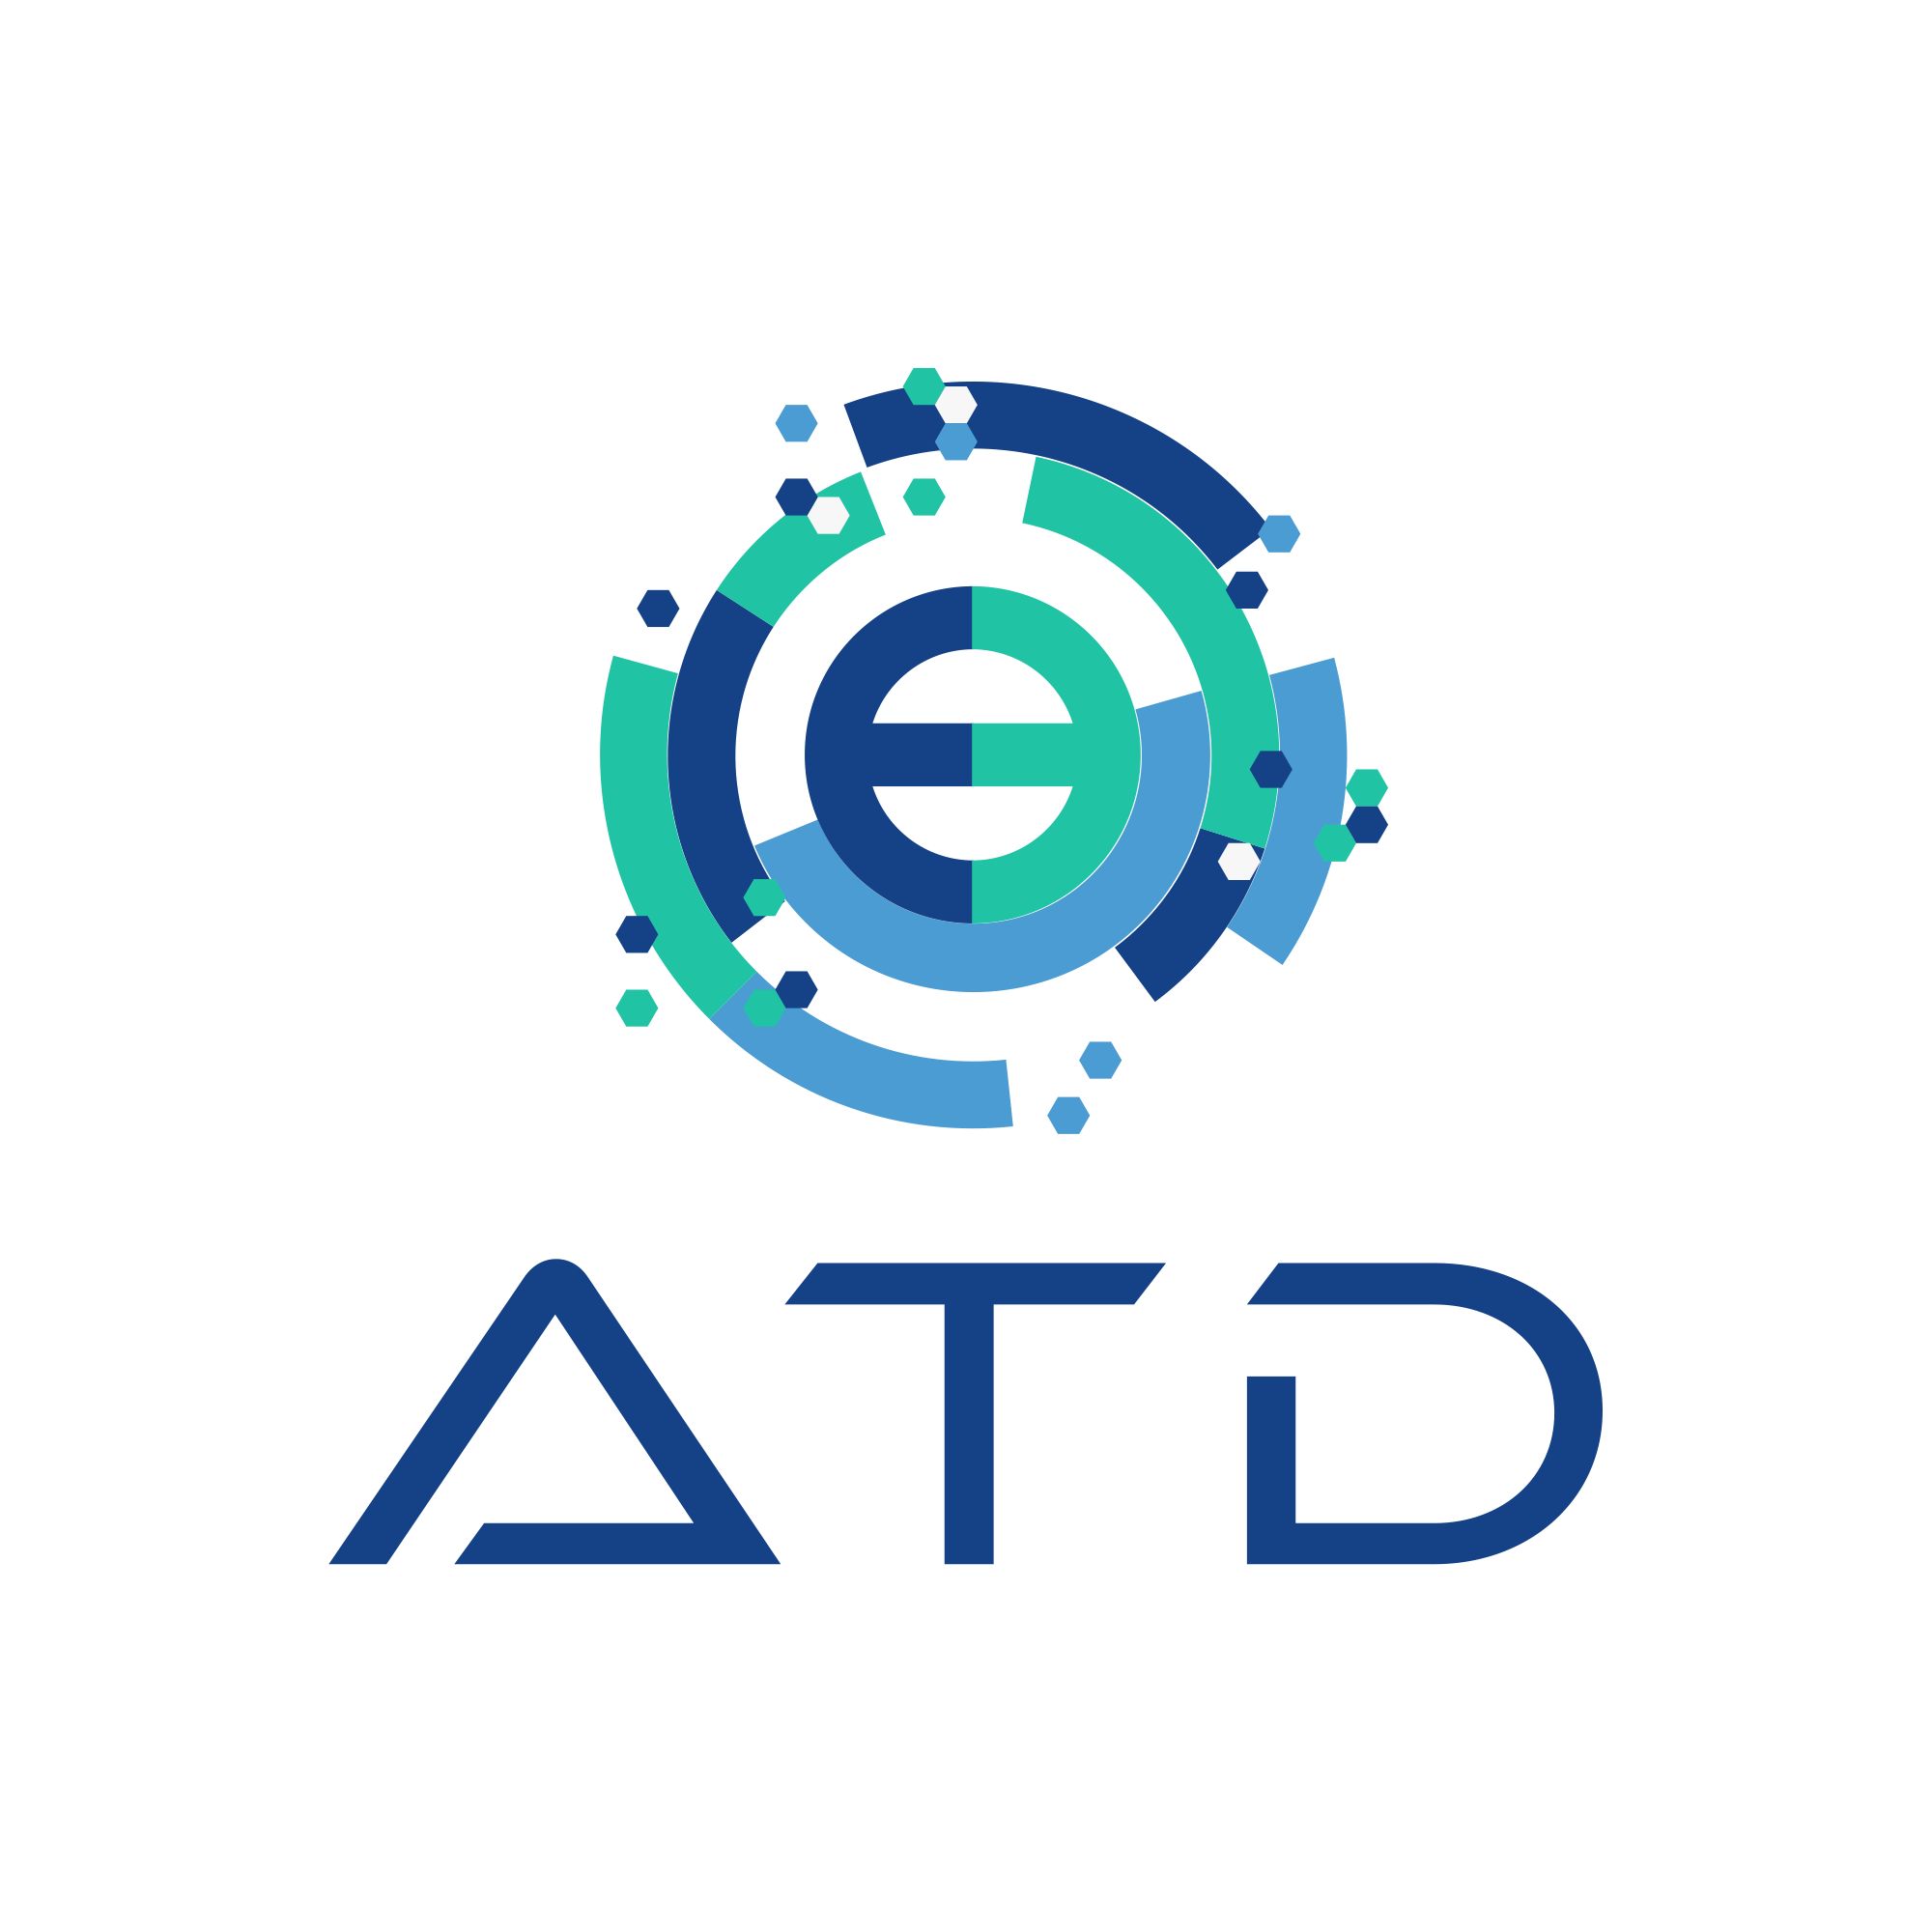 ATD logo